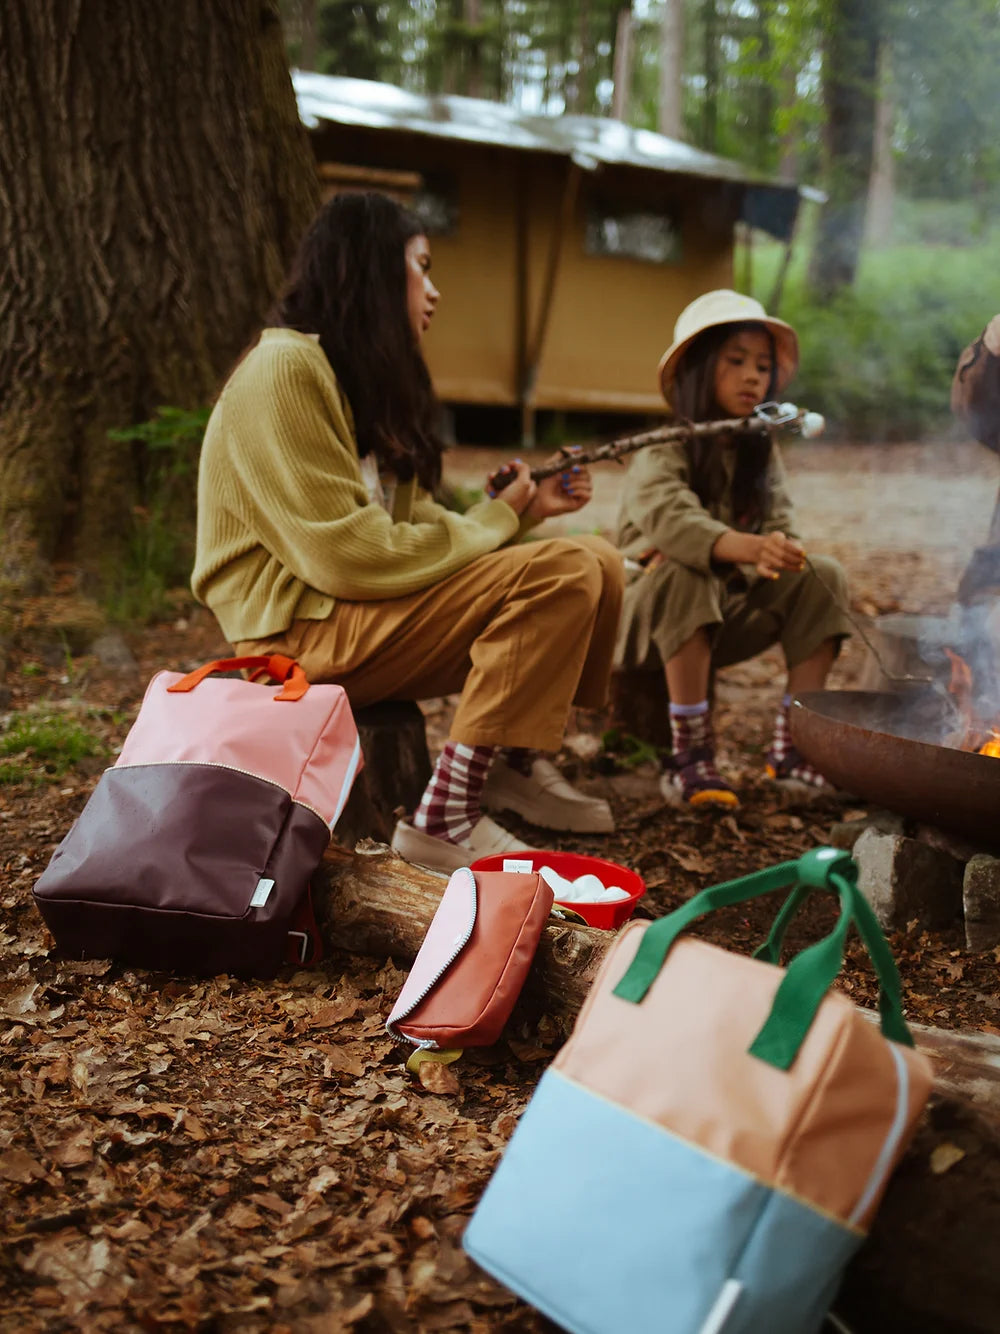 Enfants dans les bois avec Sac à dos fait en bouteilles PET recyclées vert et moutarde